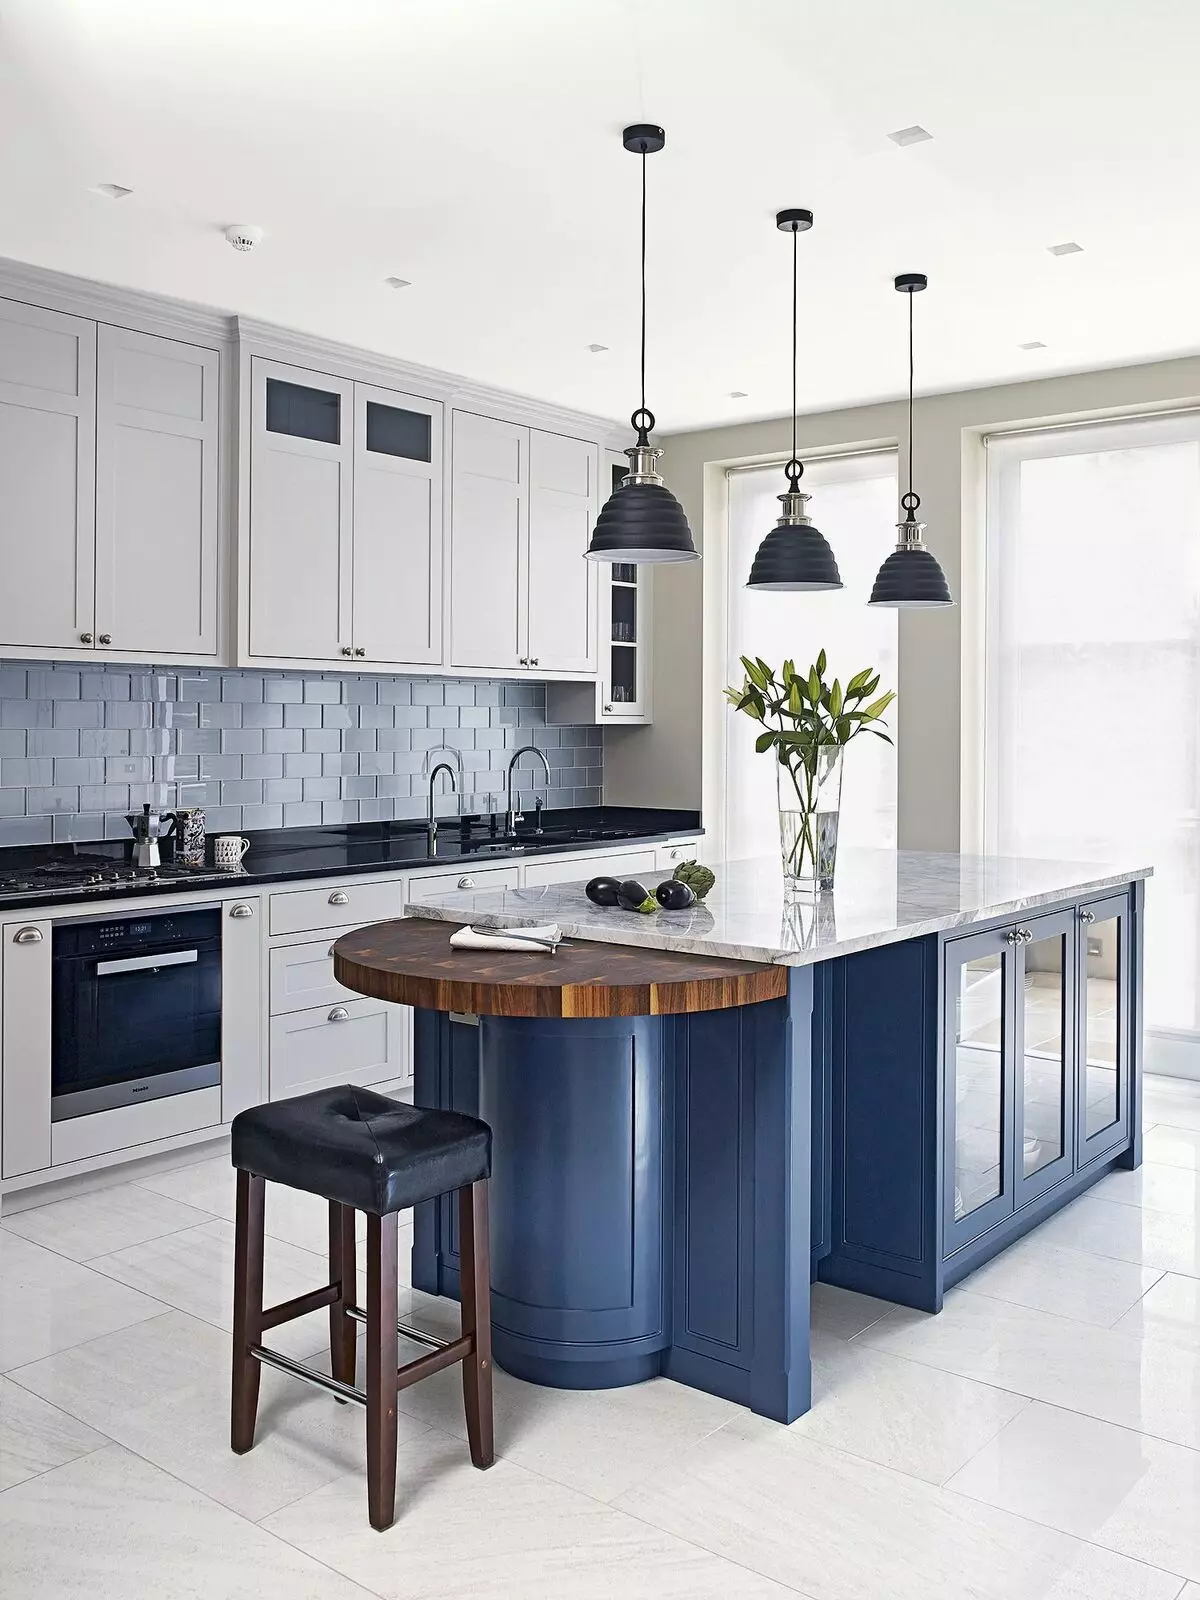 آشپزخانه آبی (82 عکس): چه رنگی در داخل یک آشپزخانه آبی ترکیب شده است؟ طراحی آشپزخانه در آبی رنگ آبی و آبی تیره 9555_16